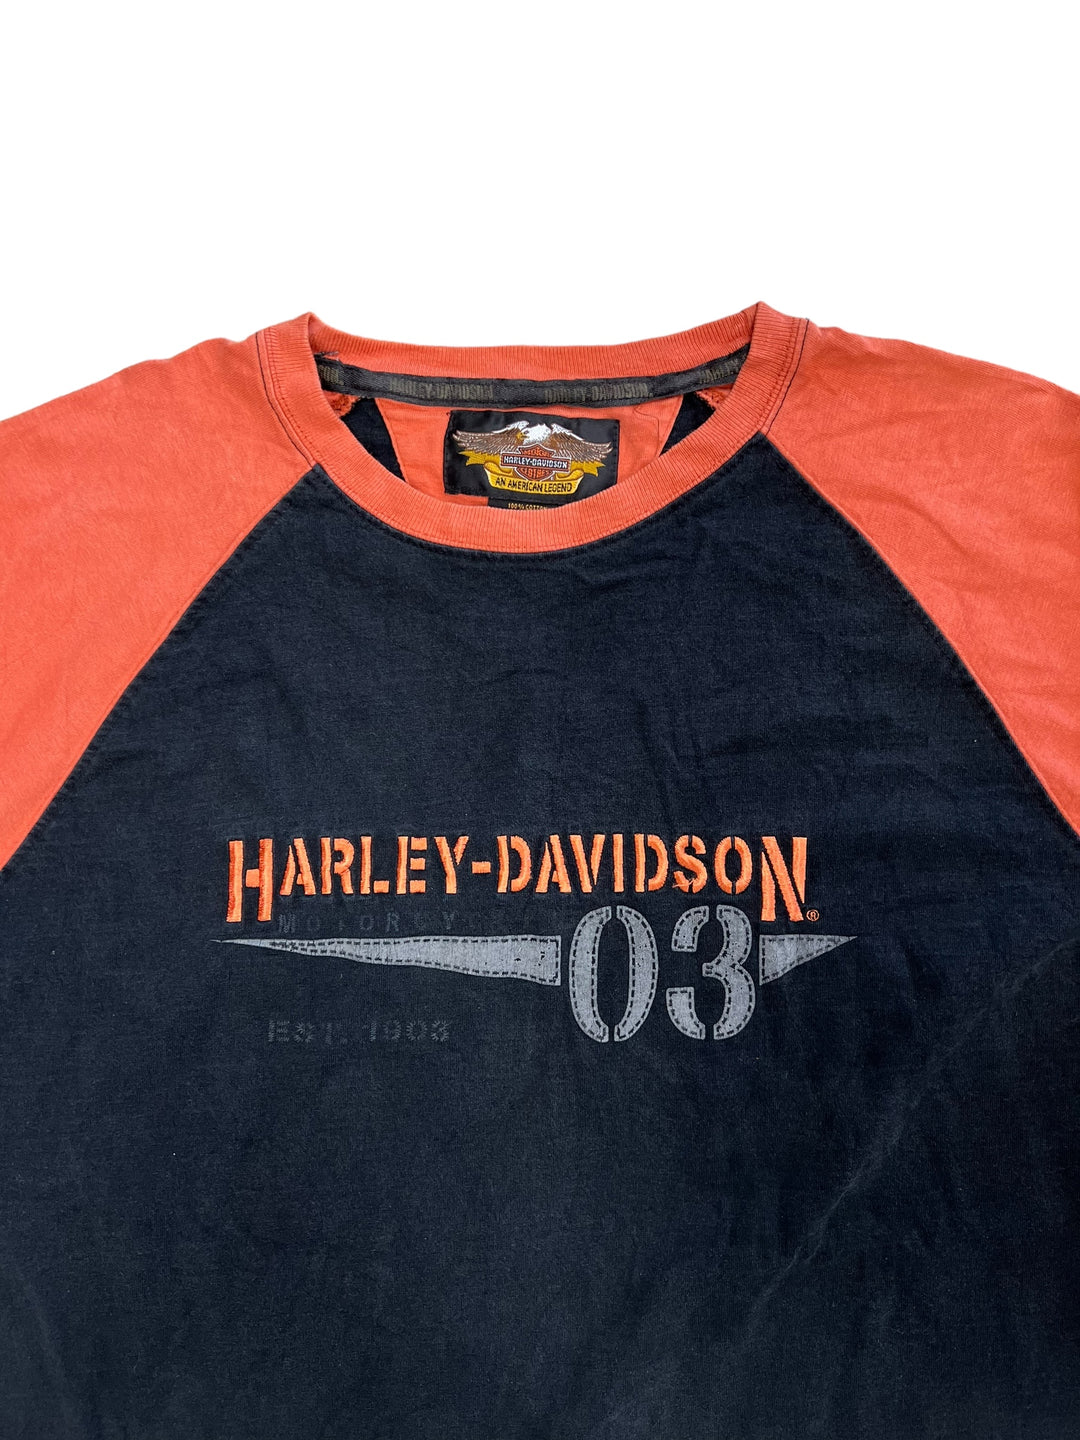 Harley-Davidson Vintage Motor Long Sleeve Top Men’s Extra Large